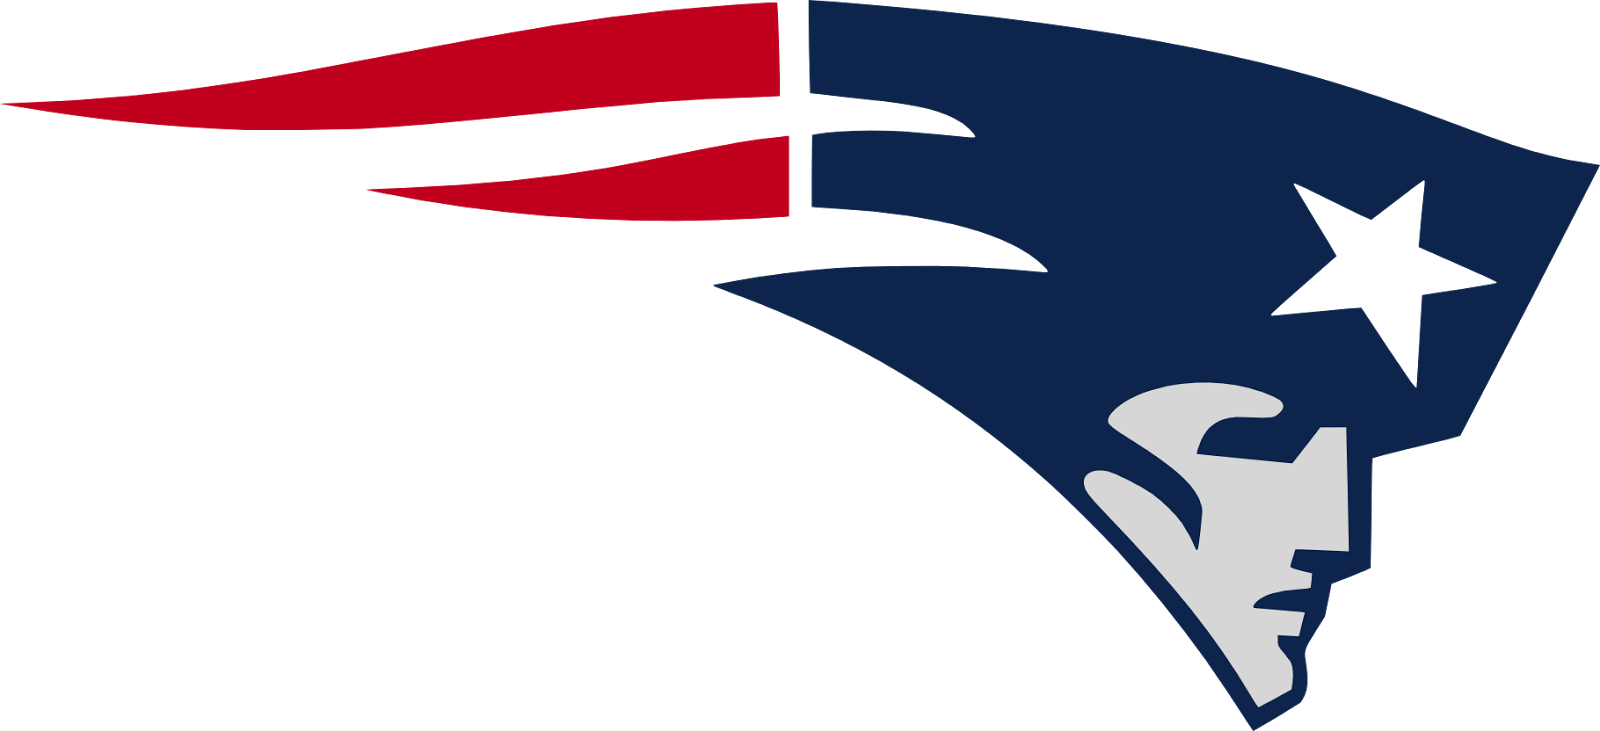 Patriots & Seahawks Svgs - New England Patriots (1600x731)